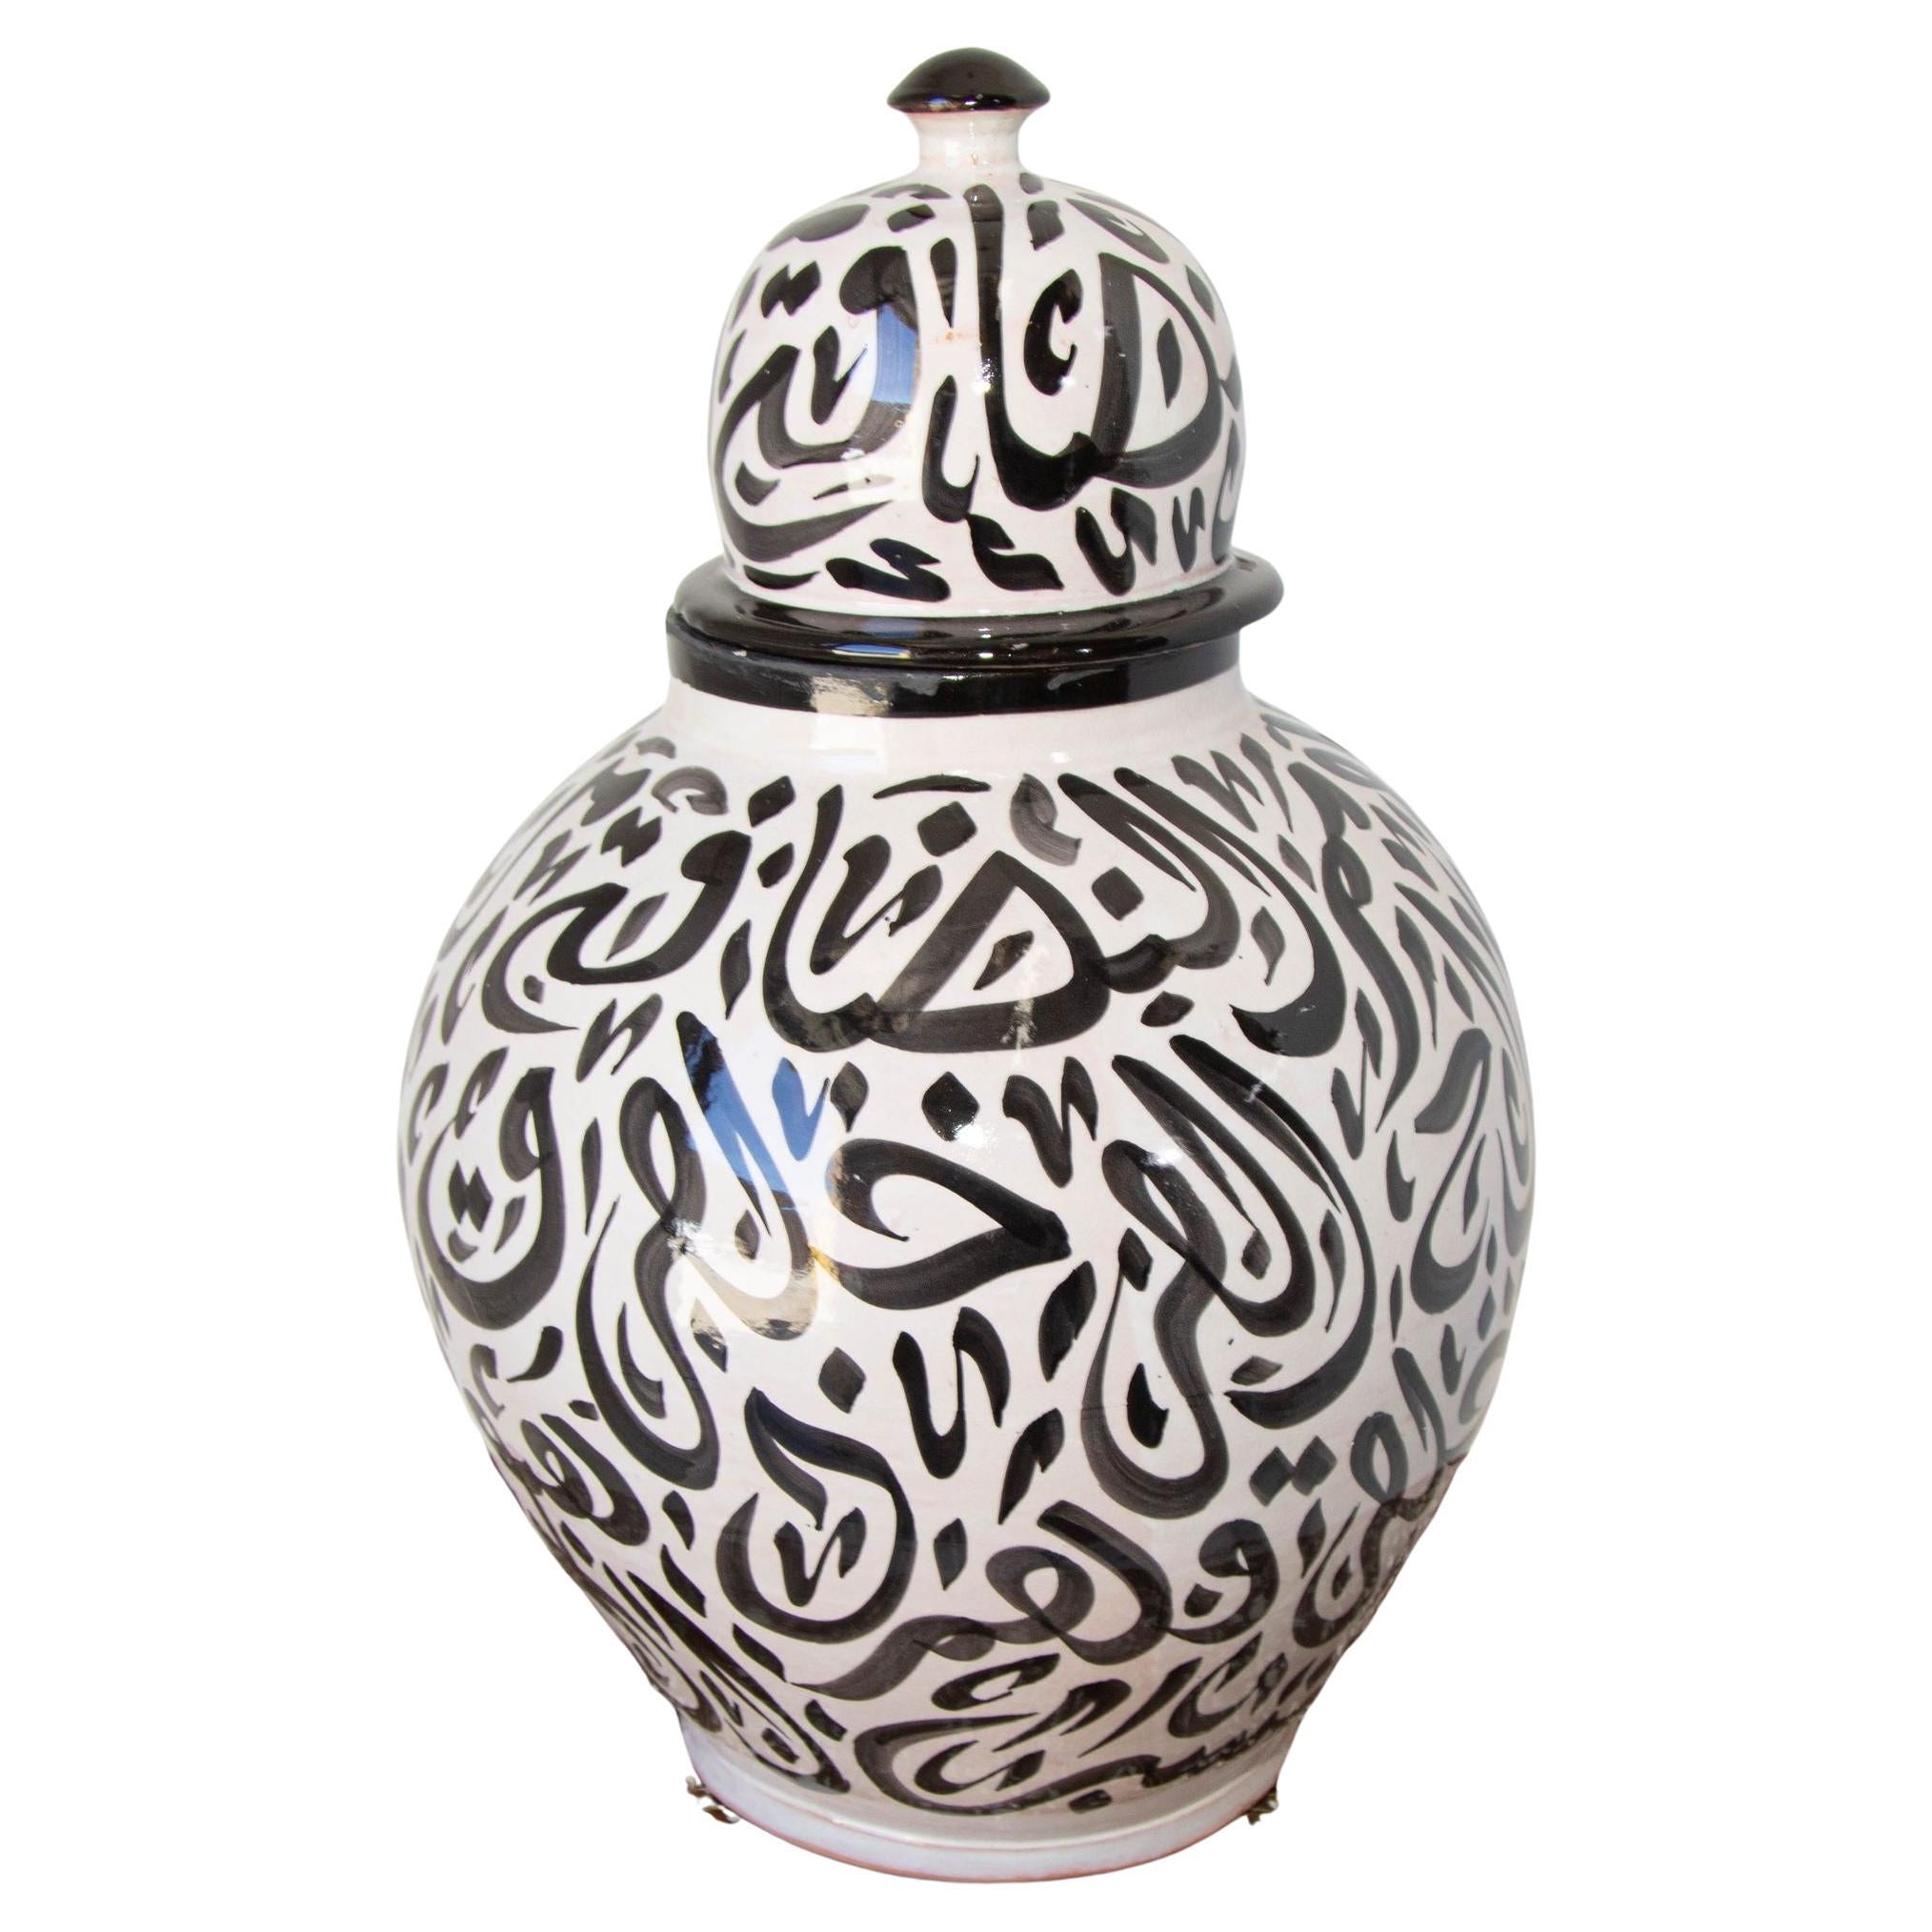 Urne à couvercle en céramique marocaine avec calligraphie arabe et écriture noire, Fez